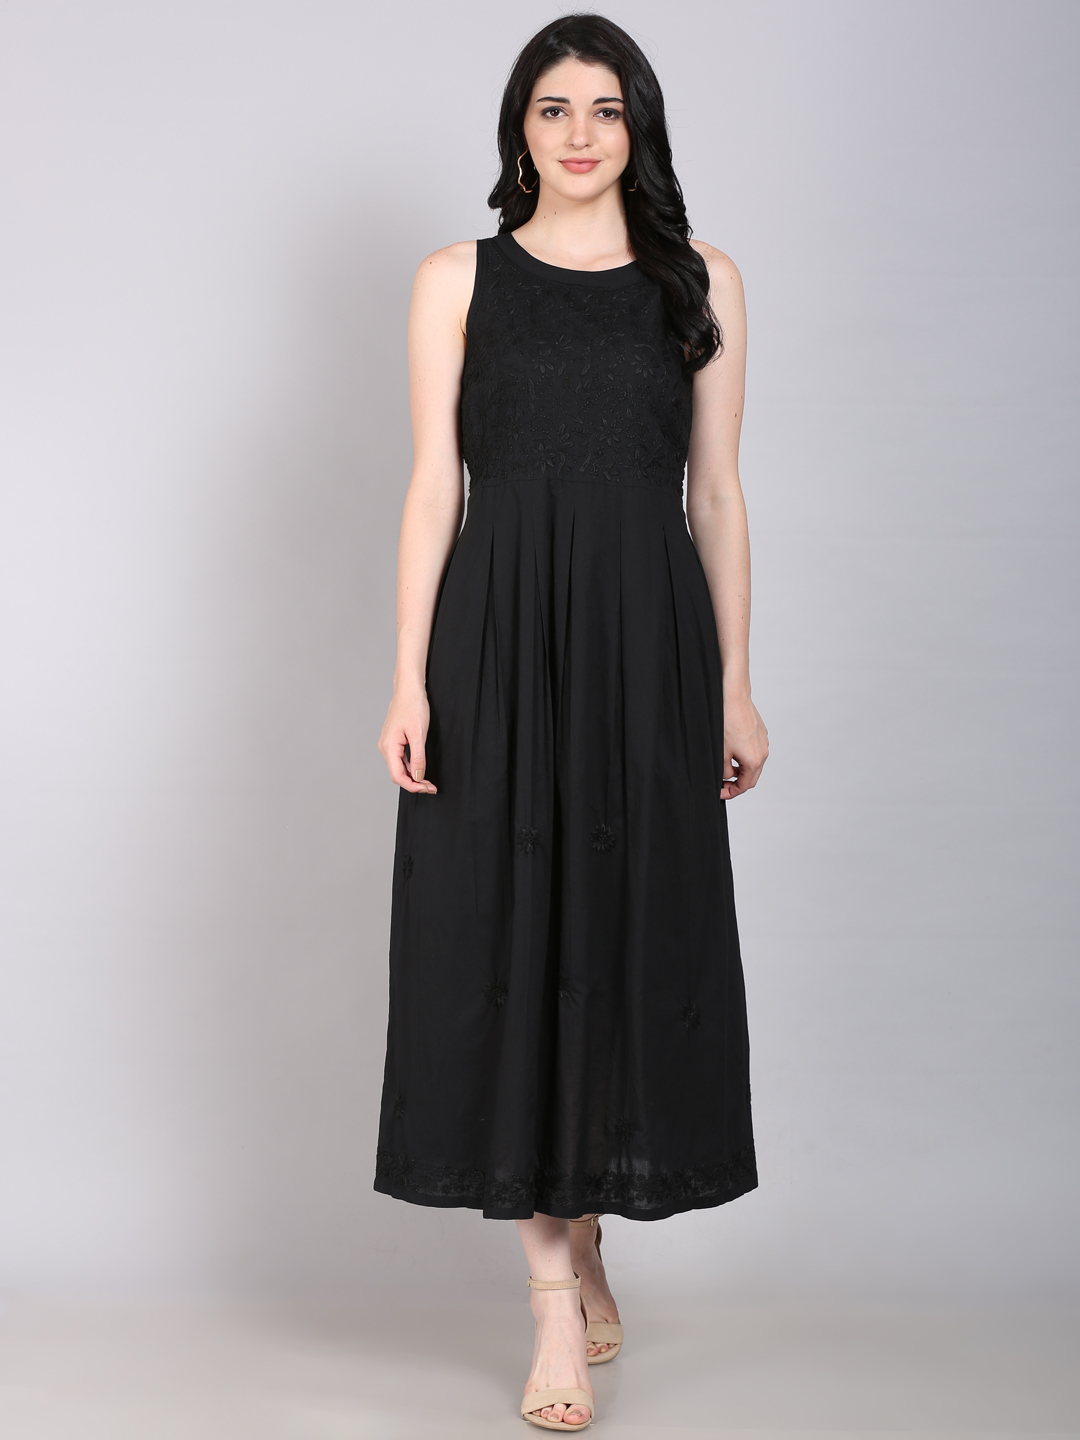 SASSAFRAS Women Bodycon Black Dress - Buy SASSAFRAS Women Bodycon Black  Dress Online at Best Prices in India | Flipkart.com